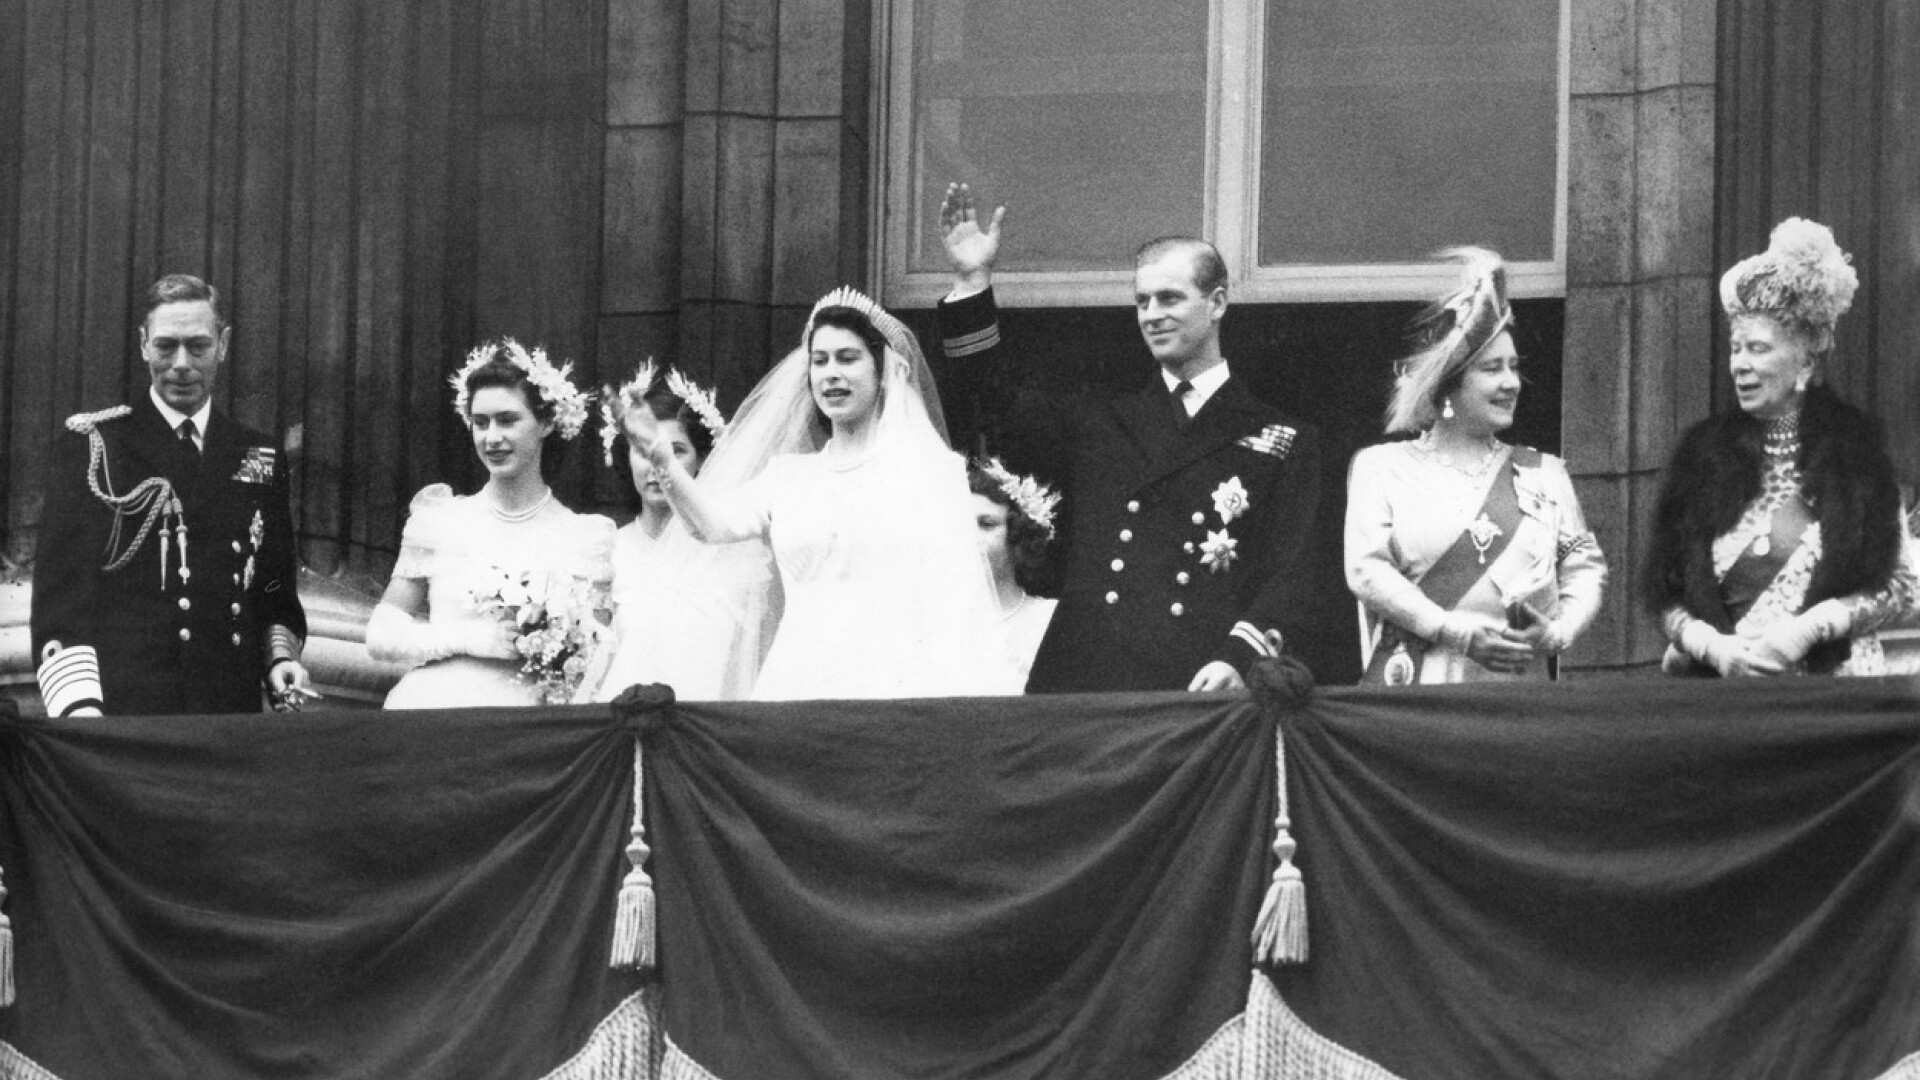 Regina Elisabeta şi prinţul Philip sărbătoresc 73 de ani de căsnicie